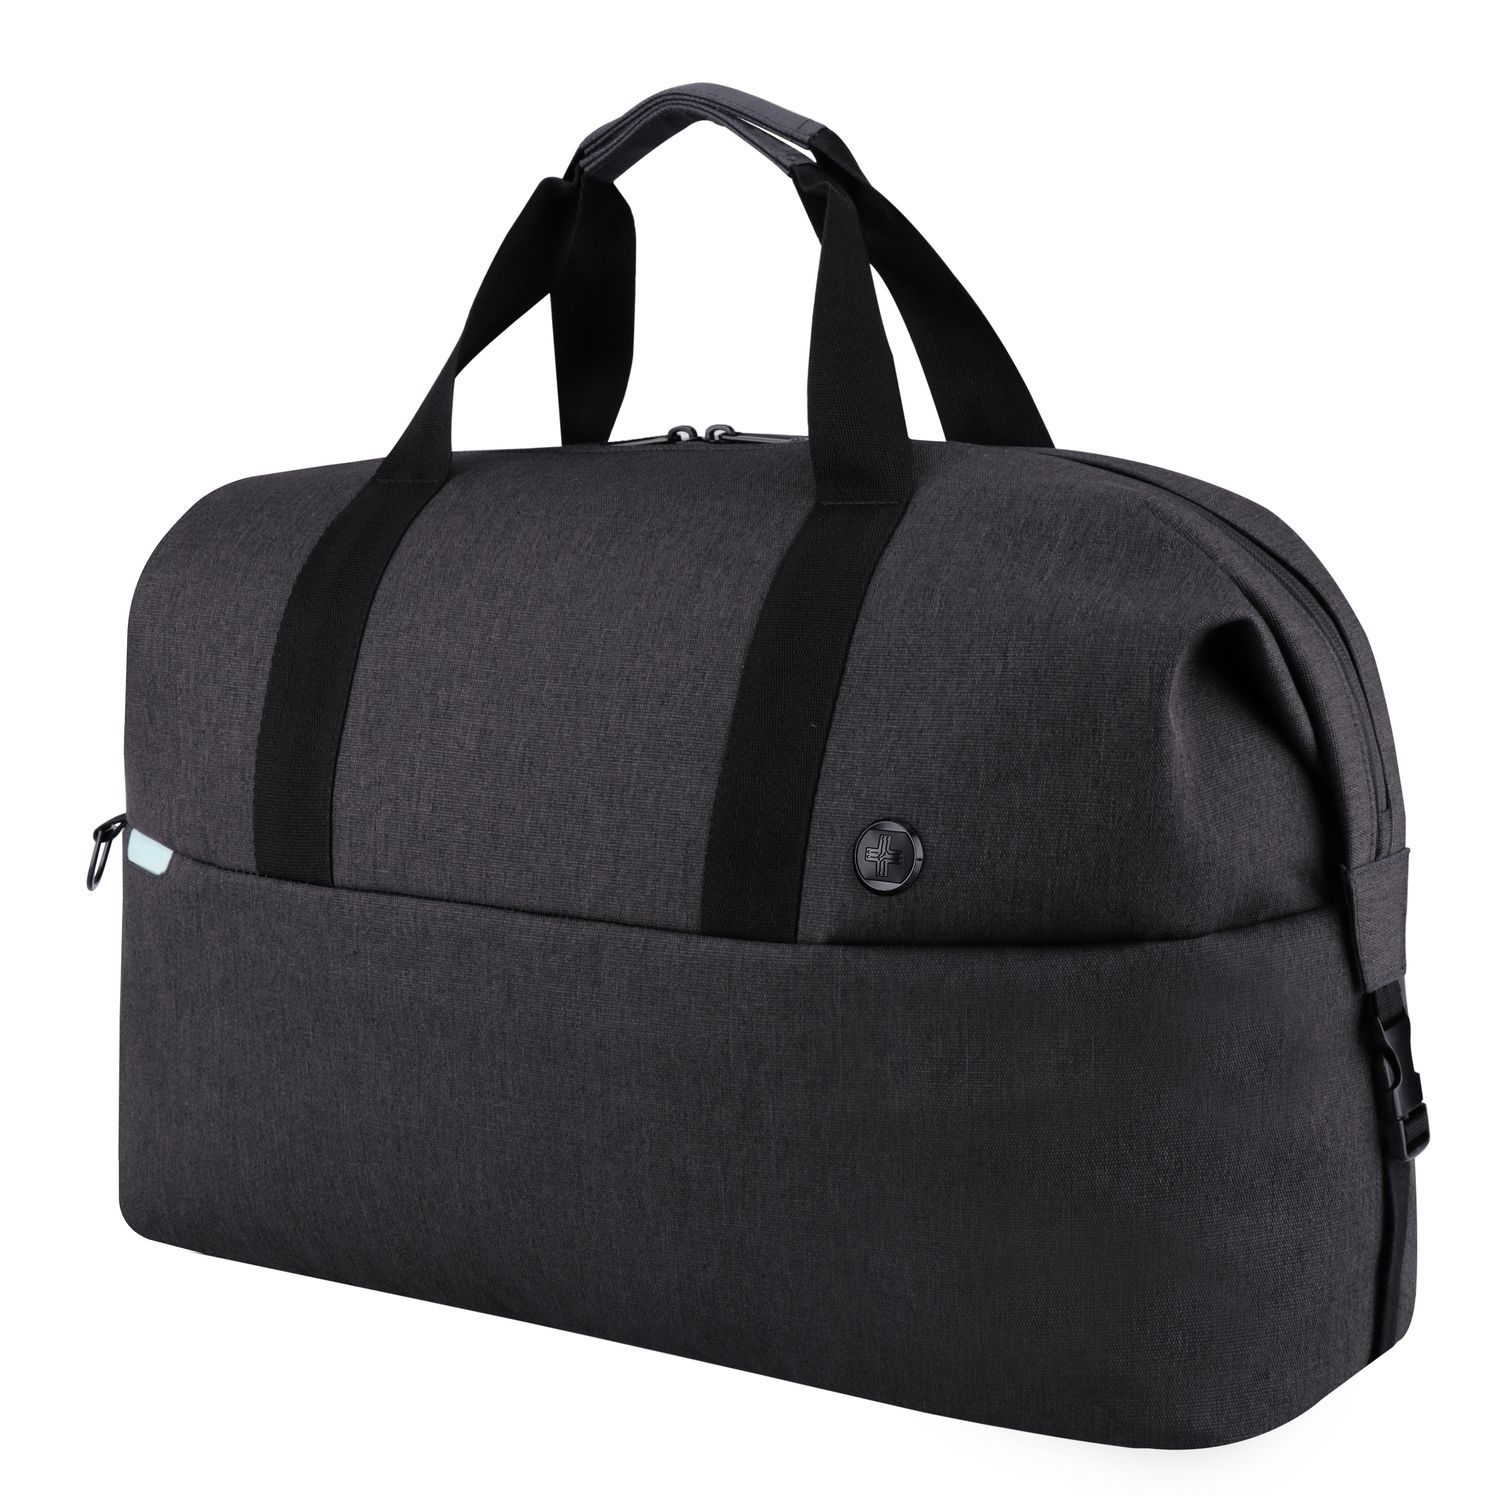 AROSA Duffle Bag